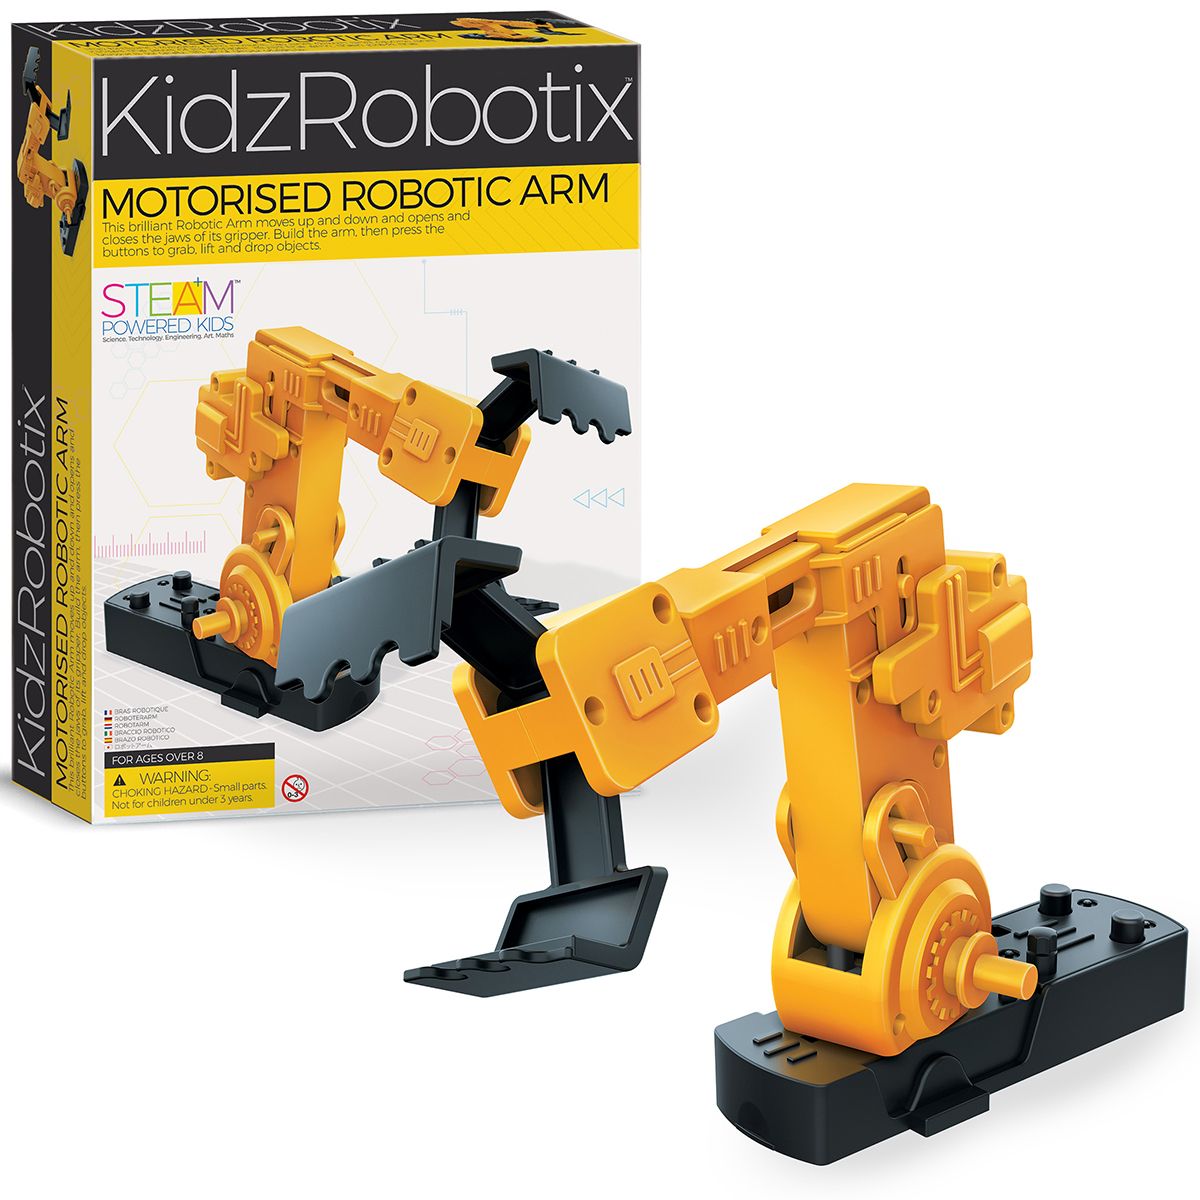 Kidz Robotix / Motorised Robotic Arm